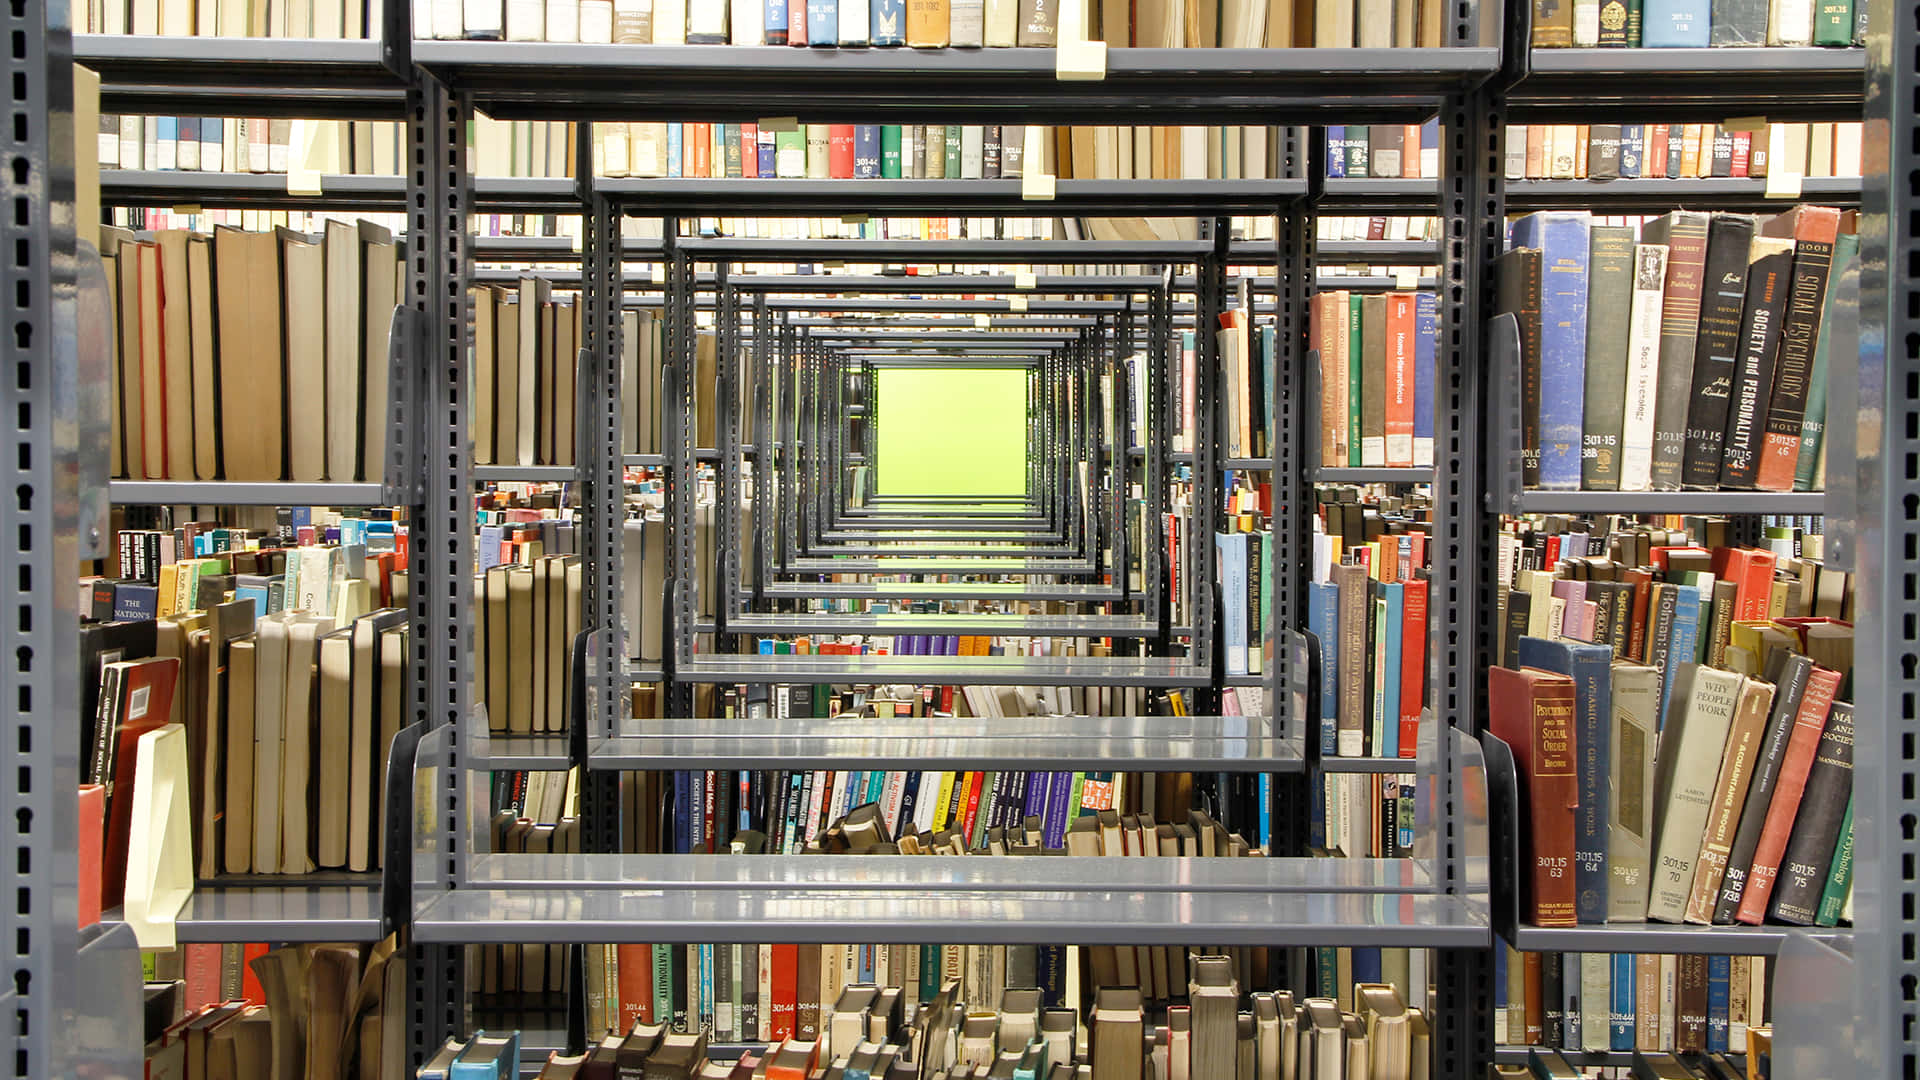 Unabiblioteca Con Muchos Libros En Estanterías